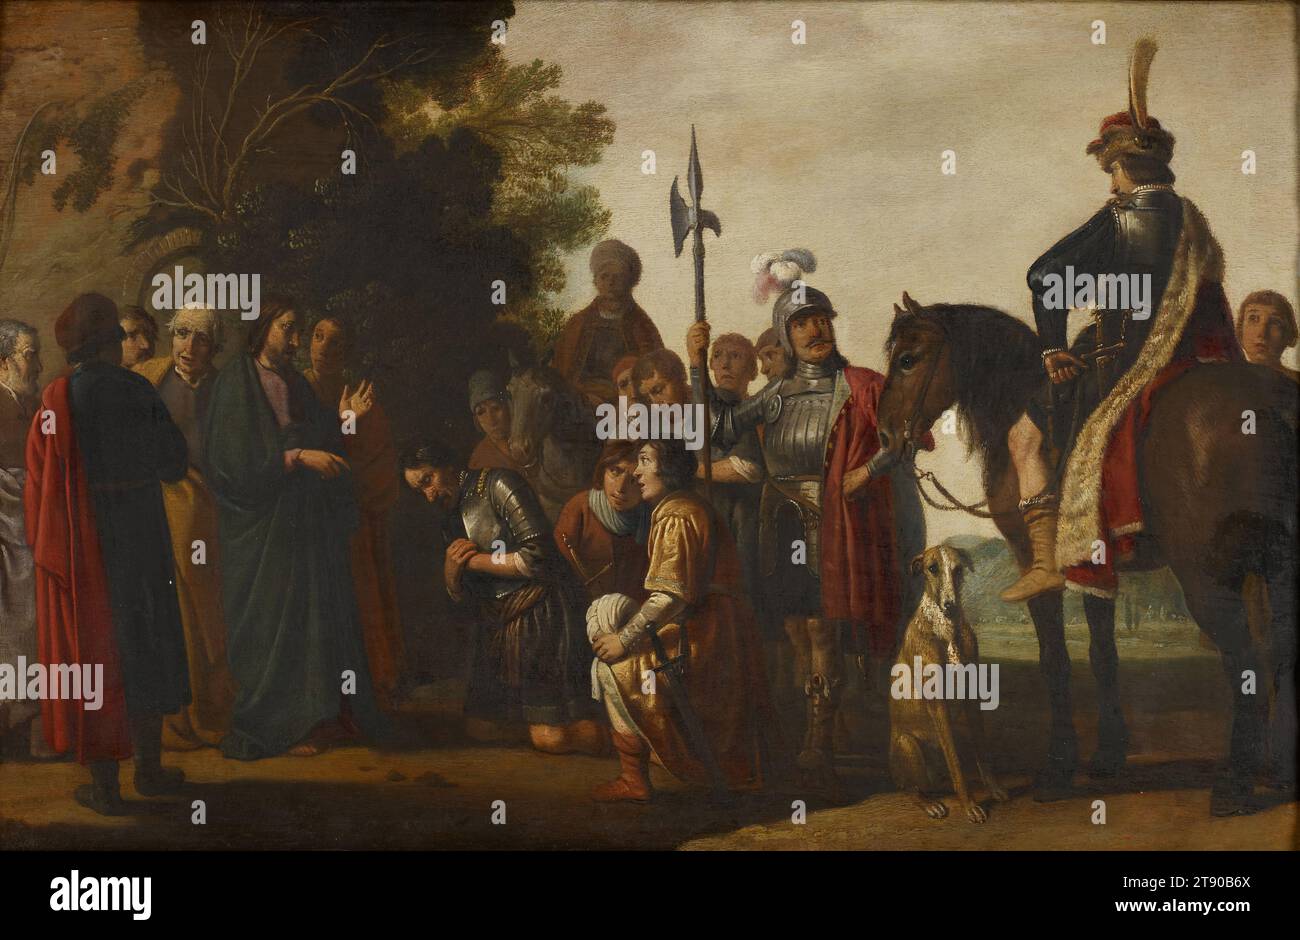 Christus mit dem Centurion, 1632, Nicolaes Cornelisz Moyaert, Niederländisch, 1591 - 1655, 3/4 x 1/4 Zoll (34,93 x 53,98 cm) (Sicht)20 3/8 x 7/8 Zoll (51,75 x 70,8 cm) (Außenrahmen), Öl auf Holzplatte, Niederlande, 17. Jahrhundert, Zeichner, Maler und Druckerei, Claes Cornelisz. Moeyaert war einer der produktivsten niederländischen Künstler seiner Zeit. Moeyaerts früherer Stil war einfach und oft ziemlich steif, und seine Motive waren in erster Linie Geschichtsbilder mit biblischen oder mythologischen Erzählungen. Nach Rembrandts Ankunft in Amsterdam wurde Moeyaerts Stil viel lebendiger Stockfoto